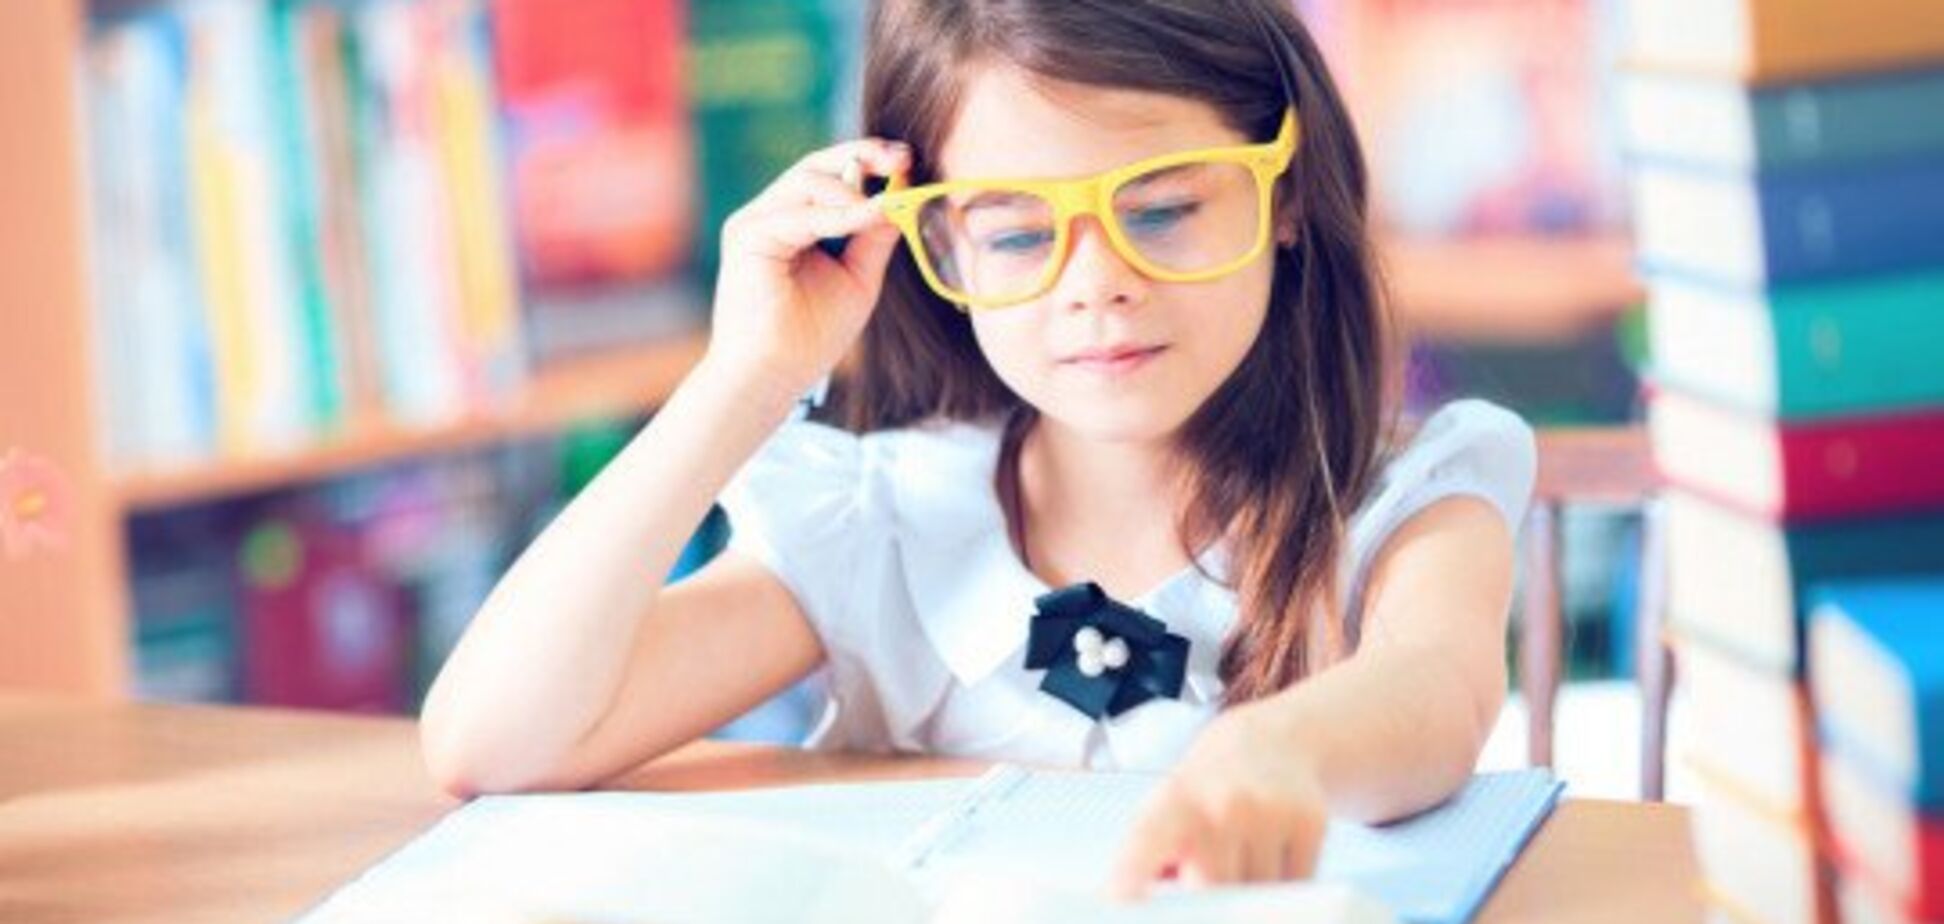 Читання змалечку позитивно впливає на успішність дитини в школі - дослідження